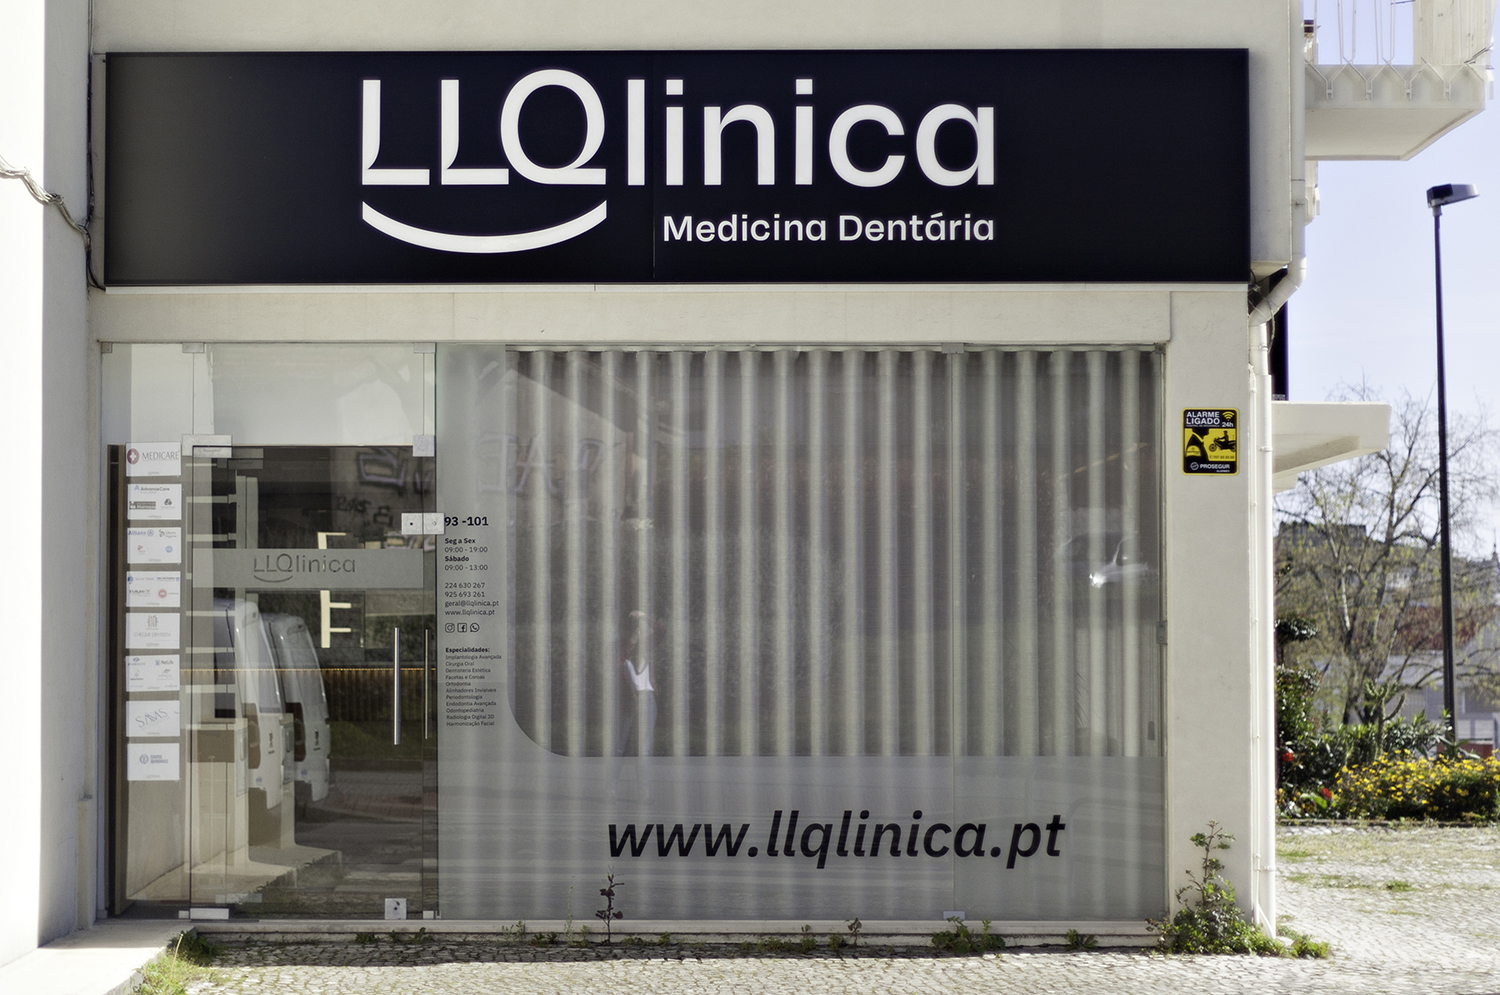 Instalações | LLQlinica - Medicina Dentária